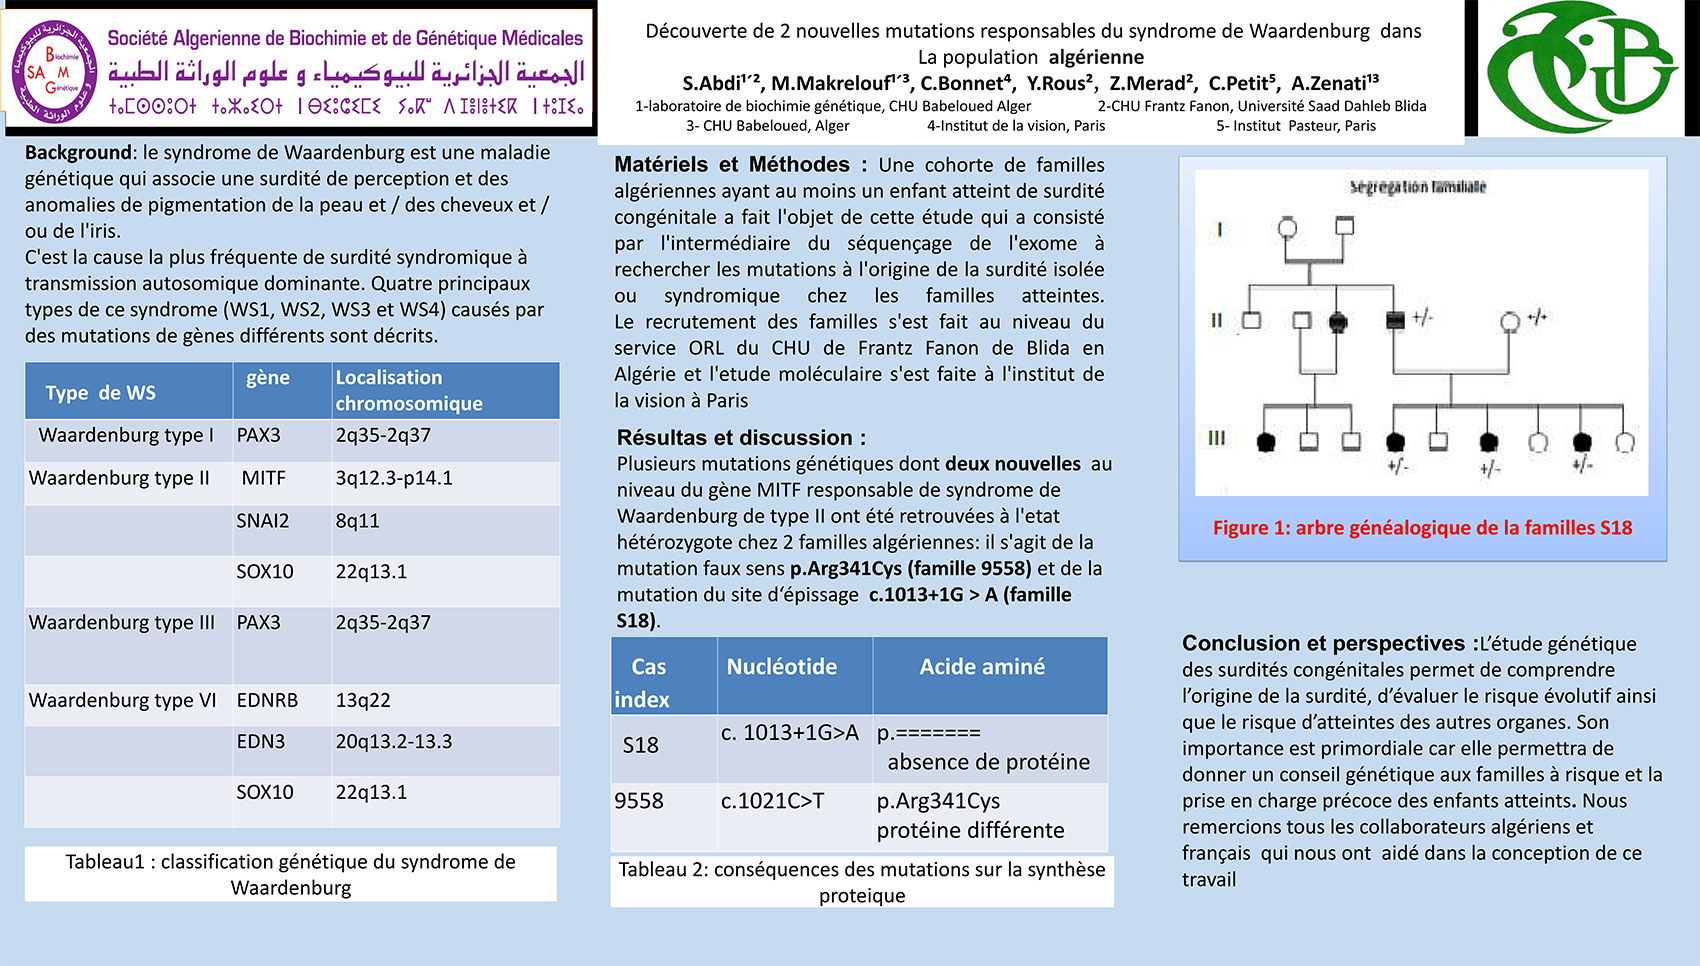 P61 : Découverte de 2 nouvelles mutations responsables du syndrome de Waardenburg dans La population algérienne